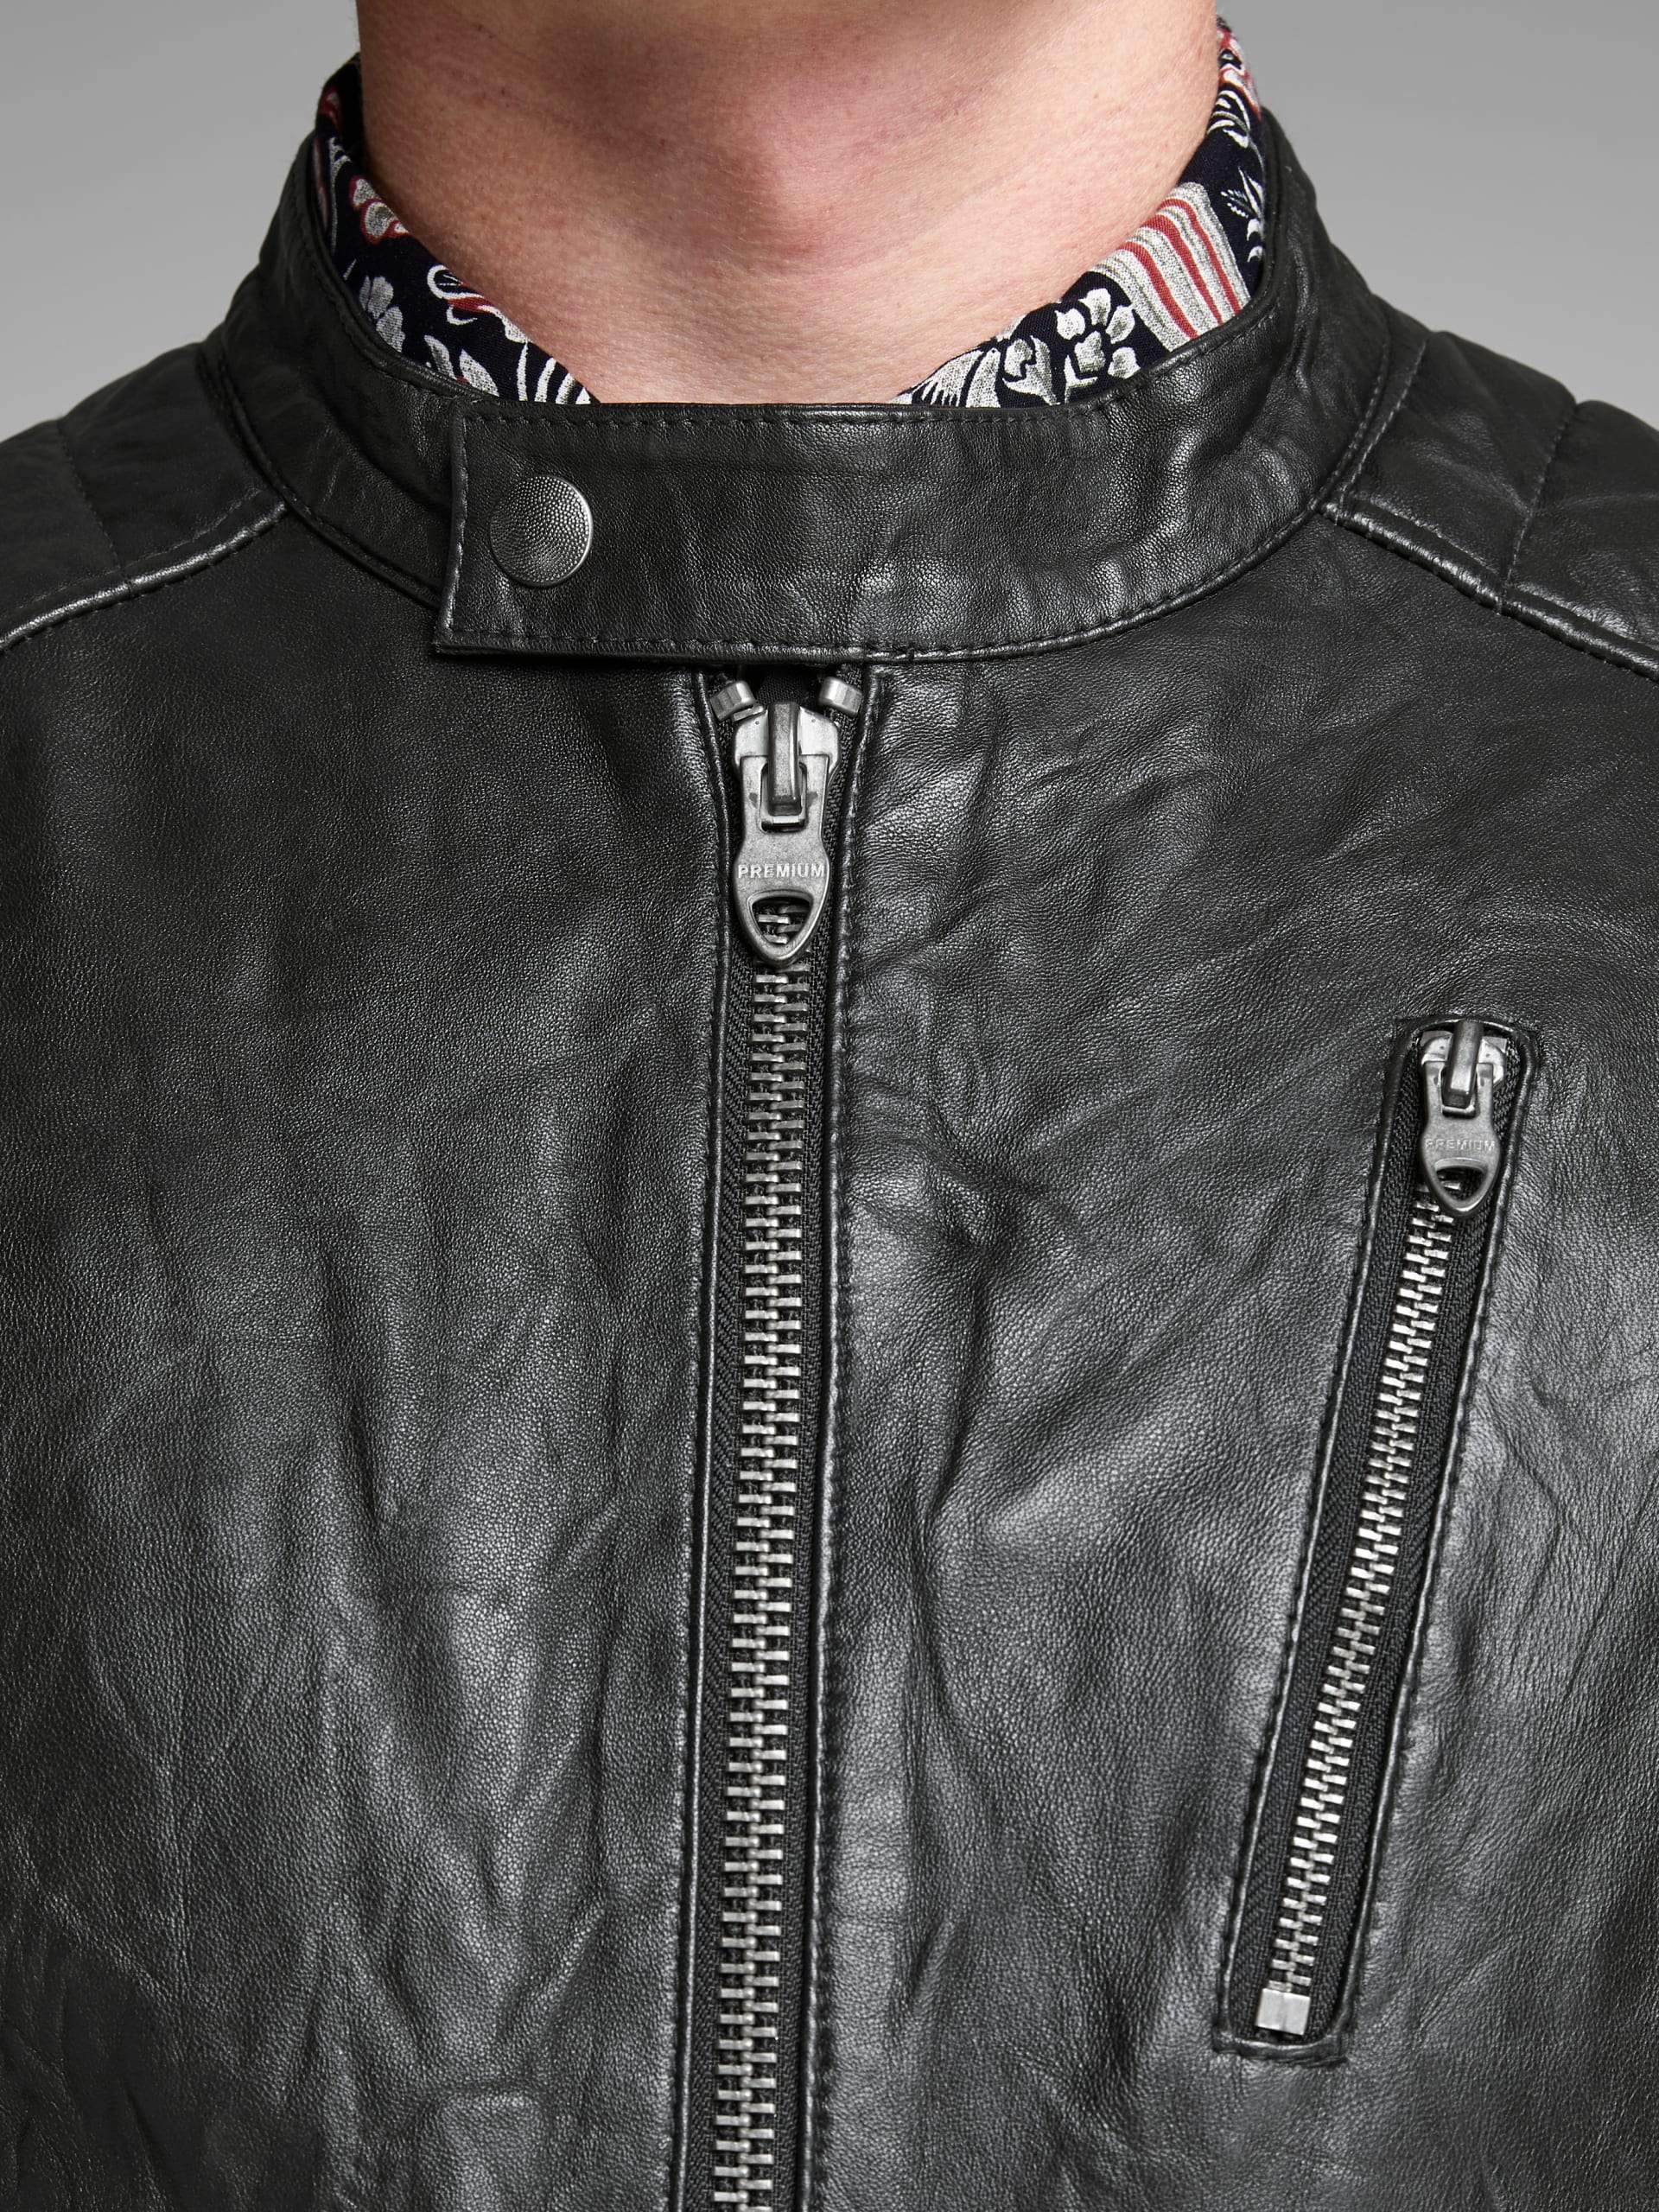 Black Bomber Vintage Leather Jacket